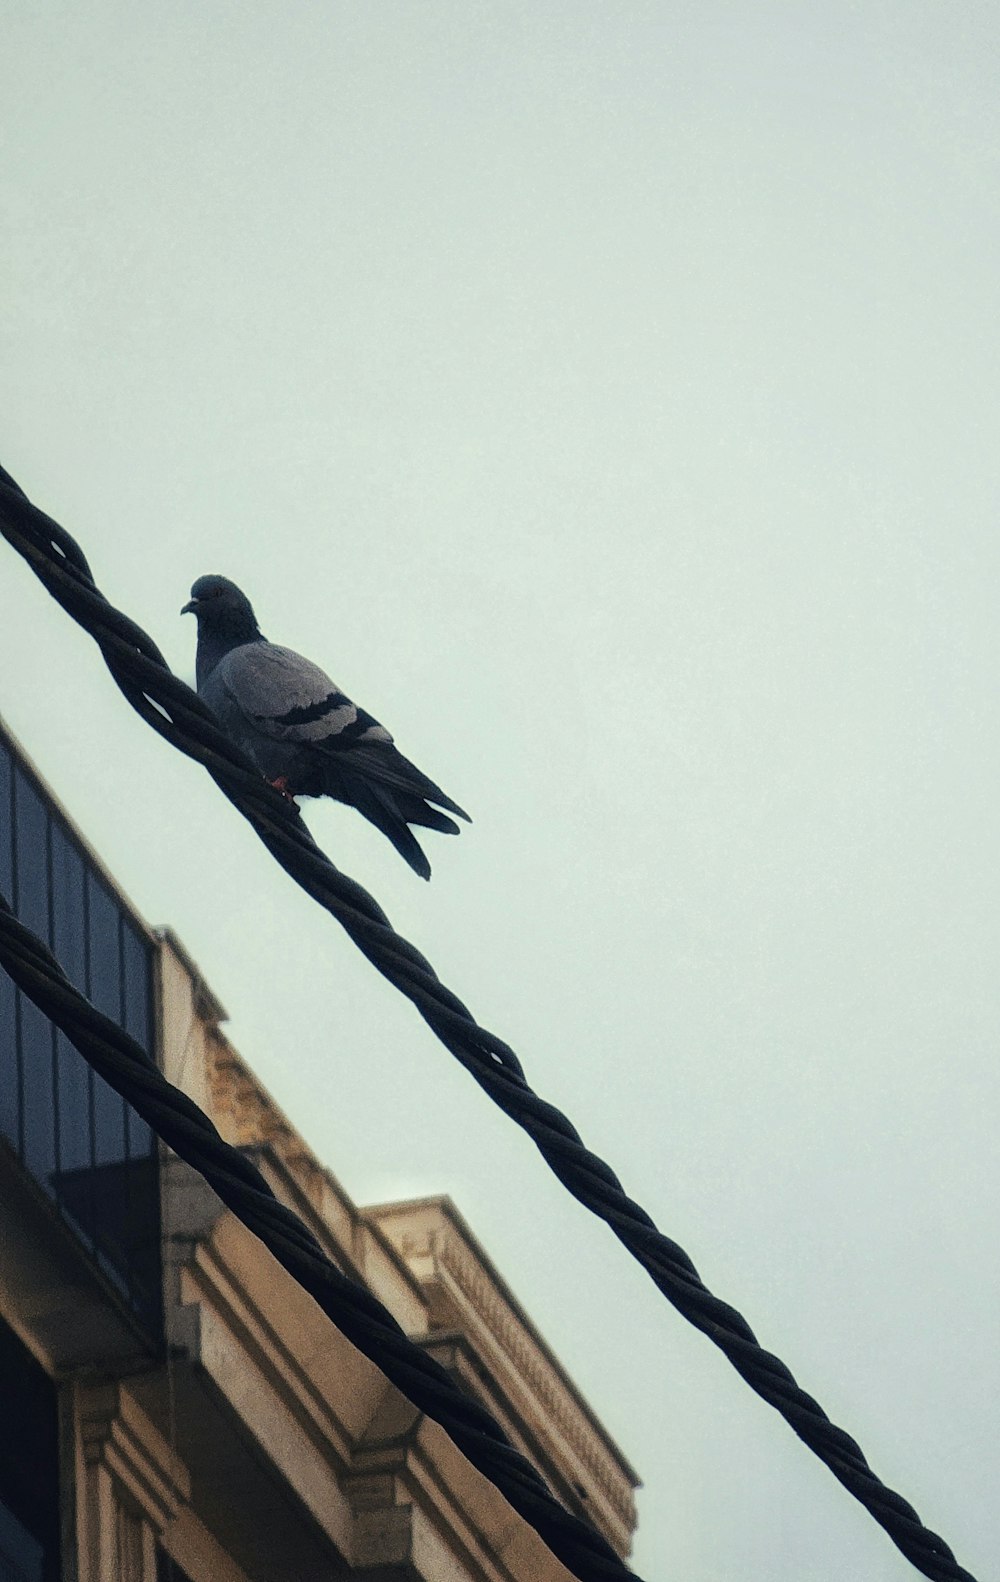 ビルの横の送電線にとまる鳩